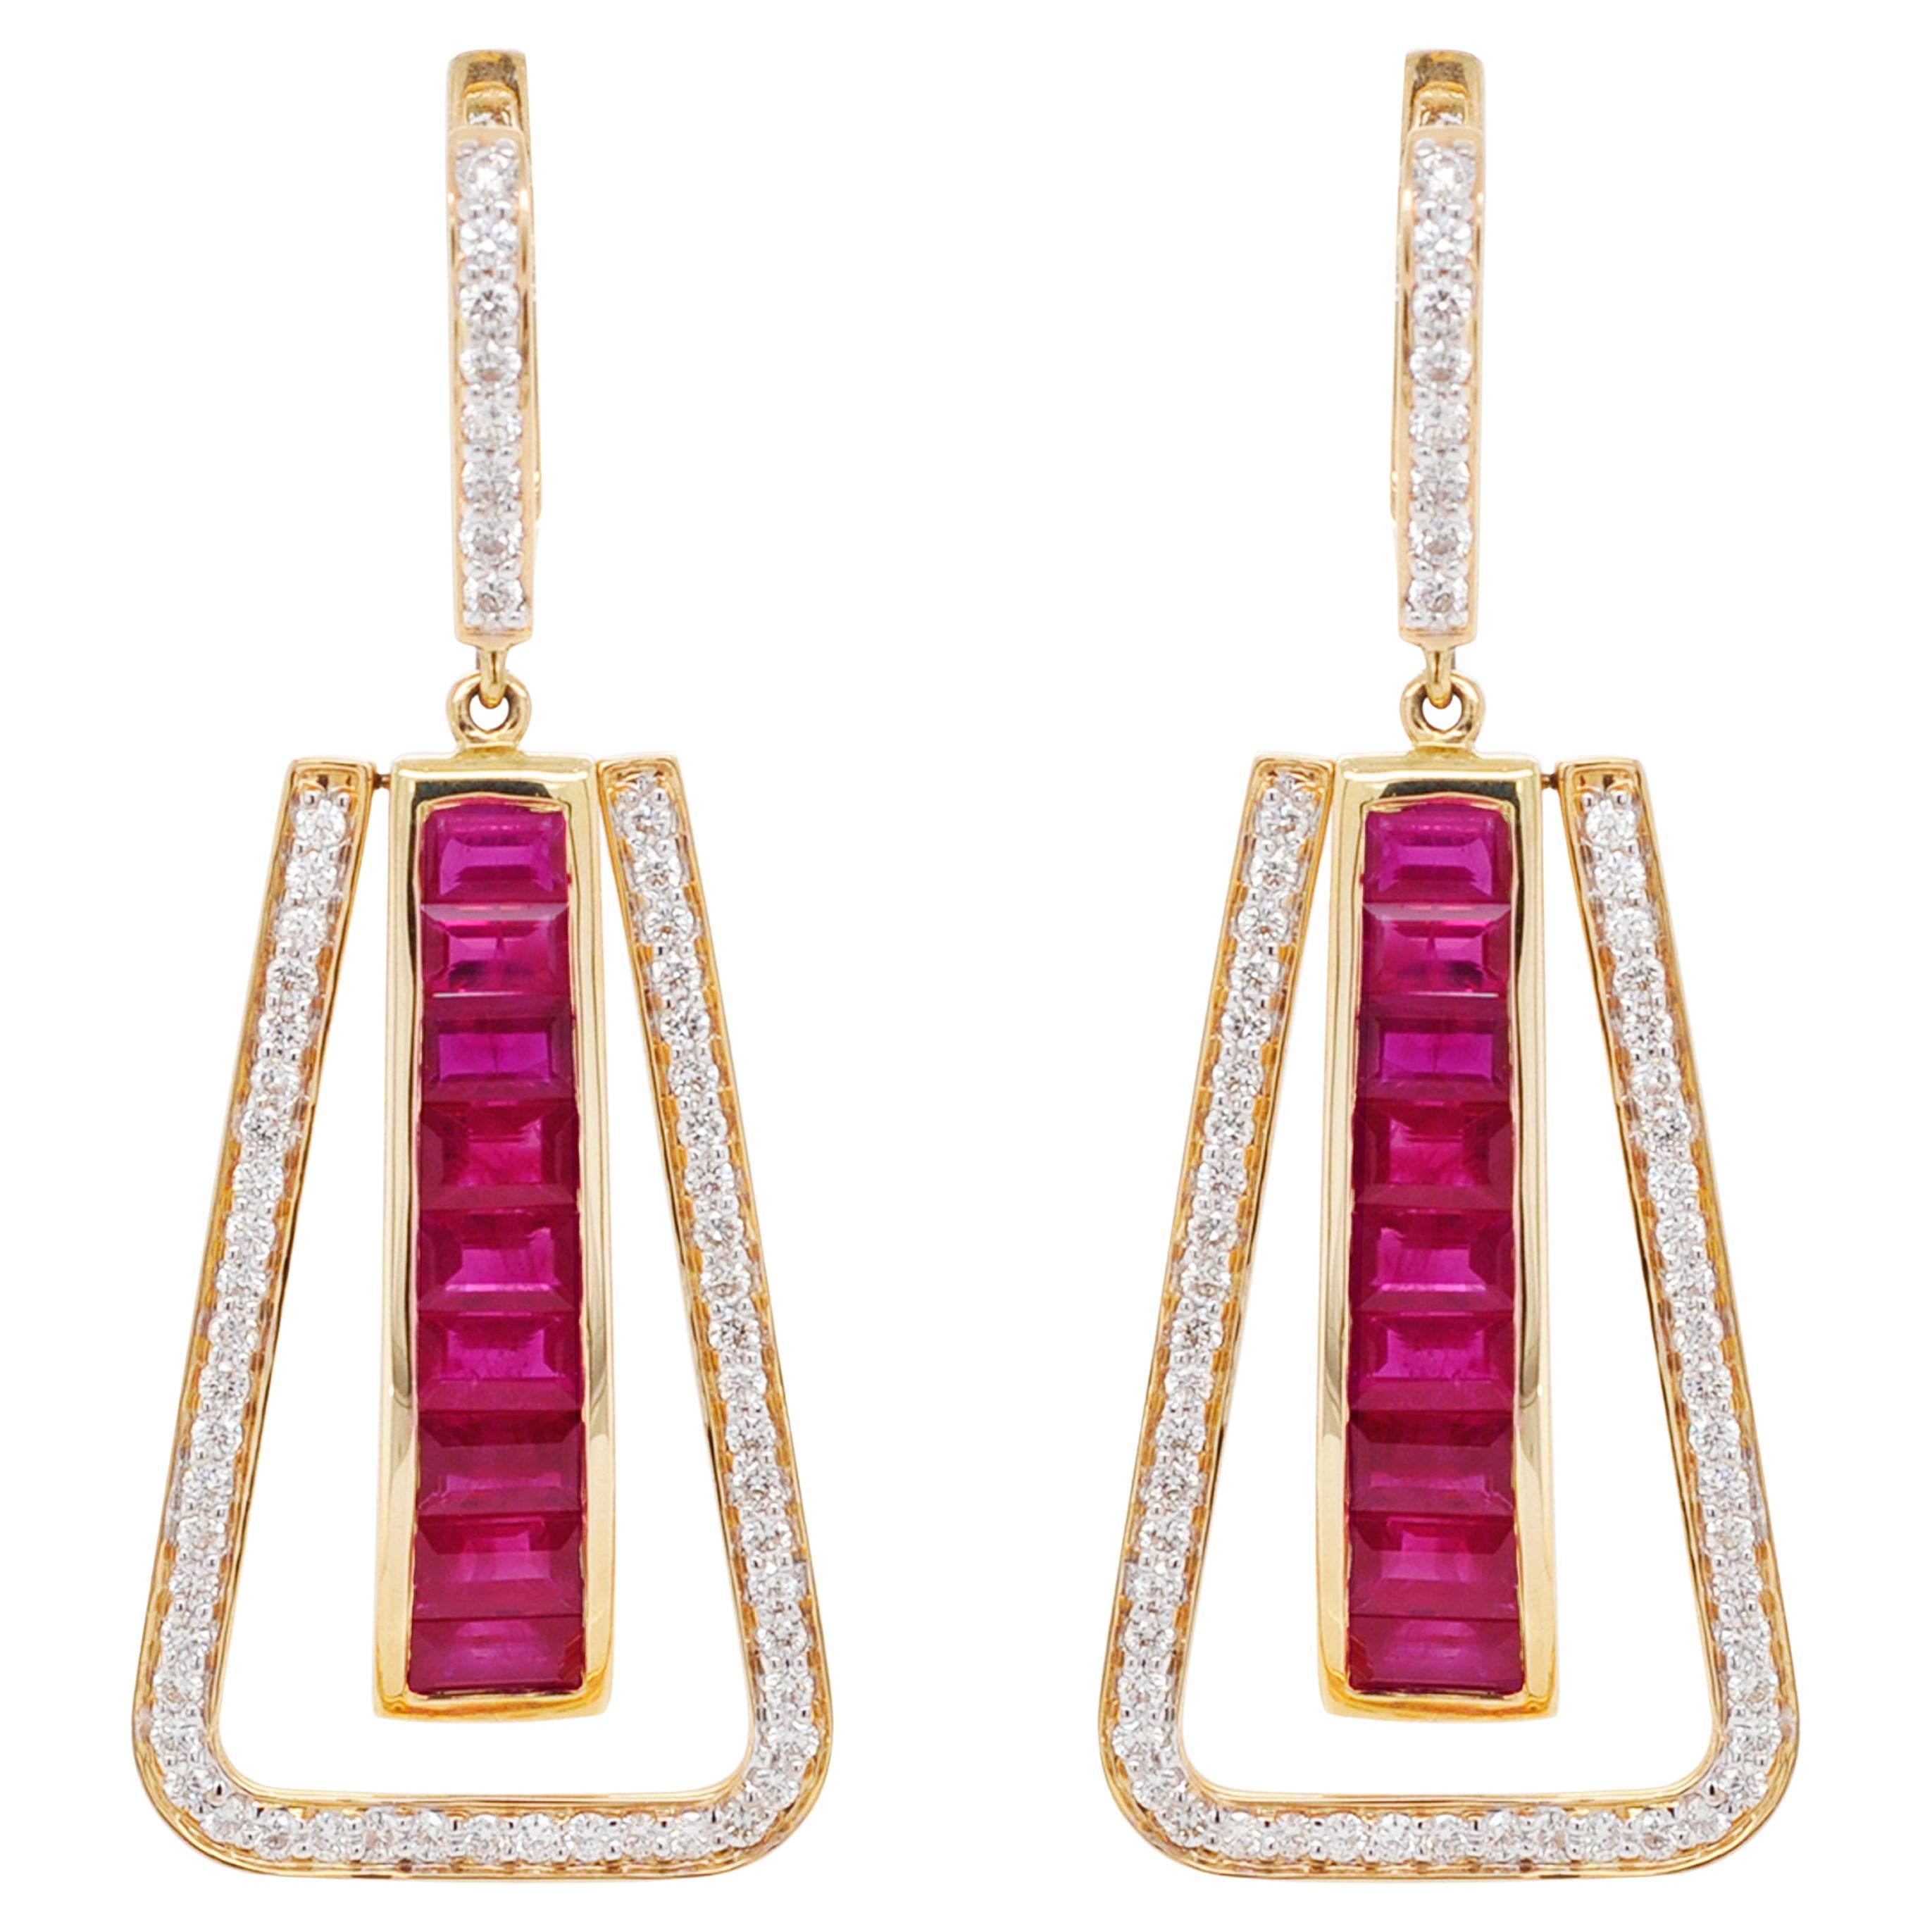 Art Deco Style 18 Karat Gold Channel Set Ruby Baguette Diamond Linear Earrings